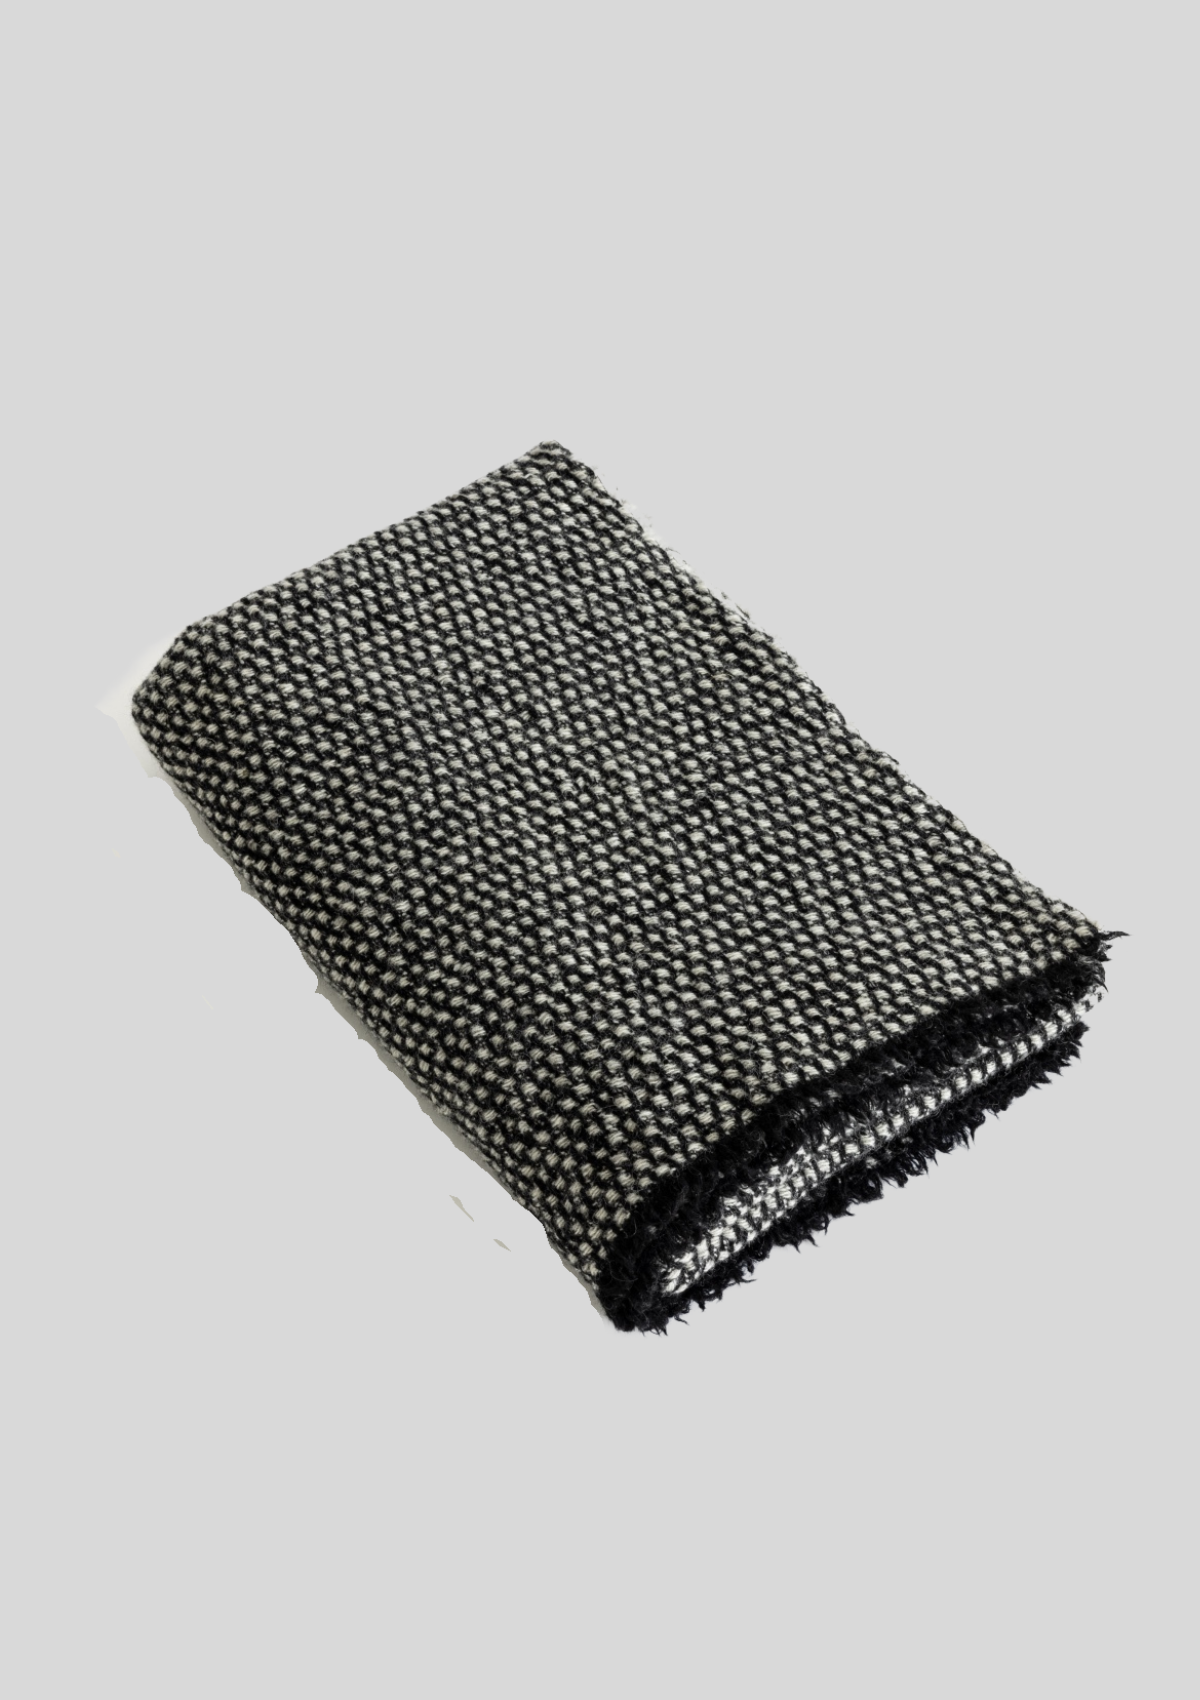 Luxurious Blanket in Oak by Ekta Helsinki - 100% Pure Wool